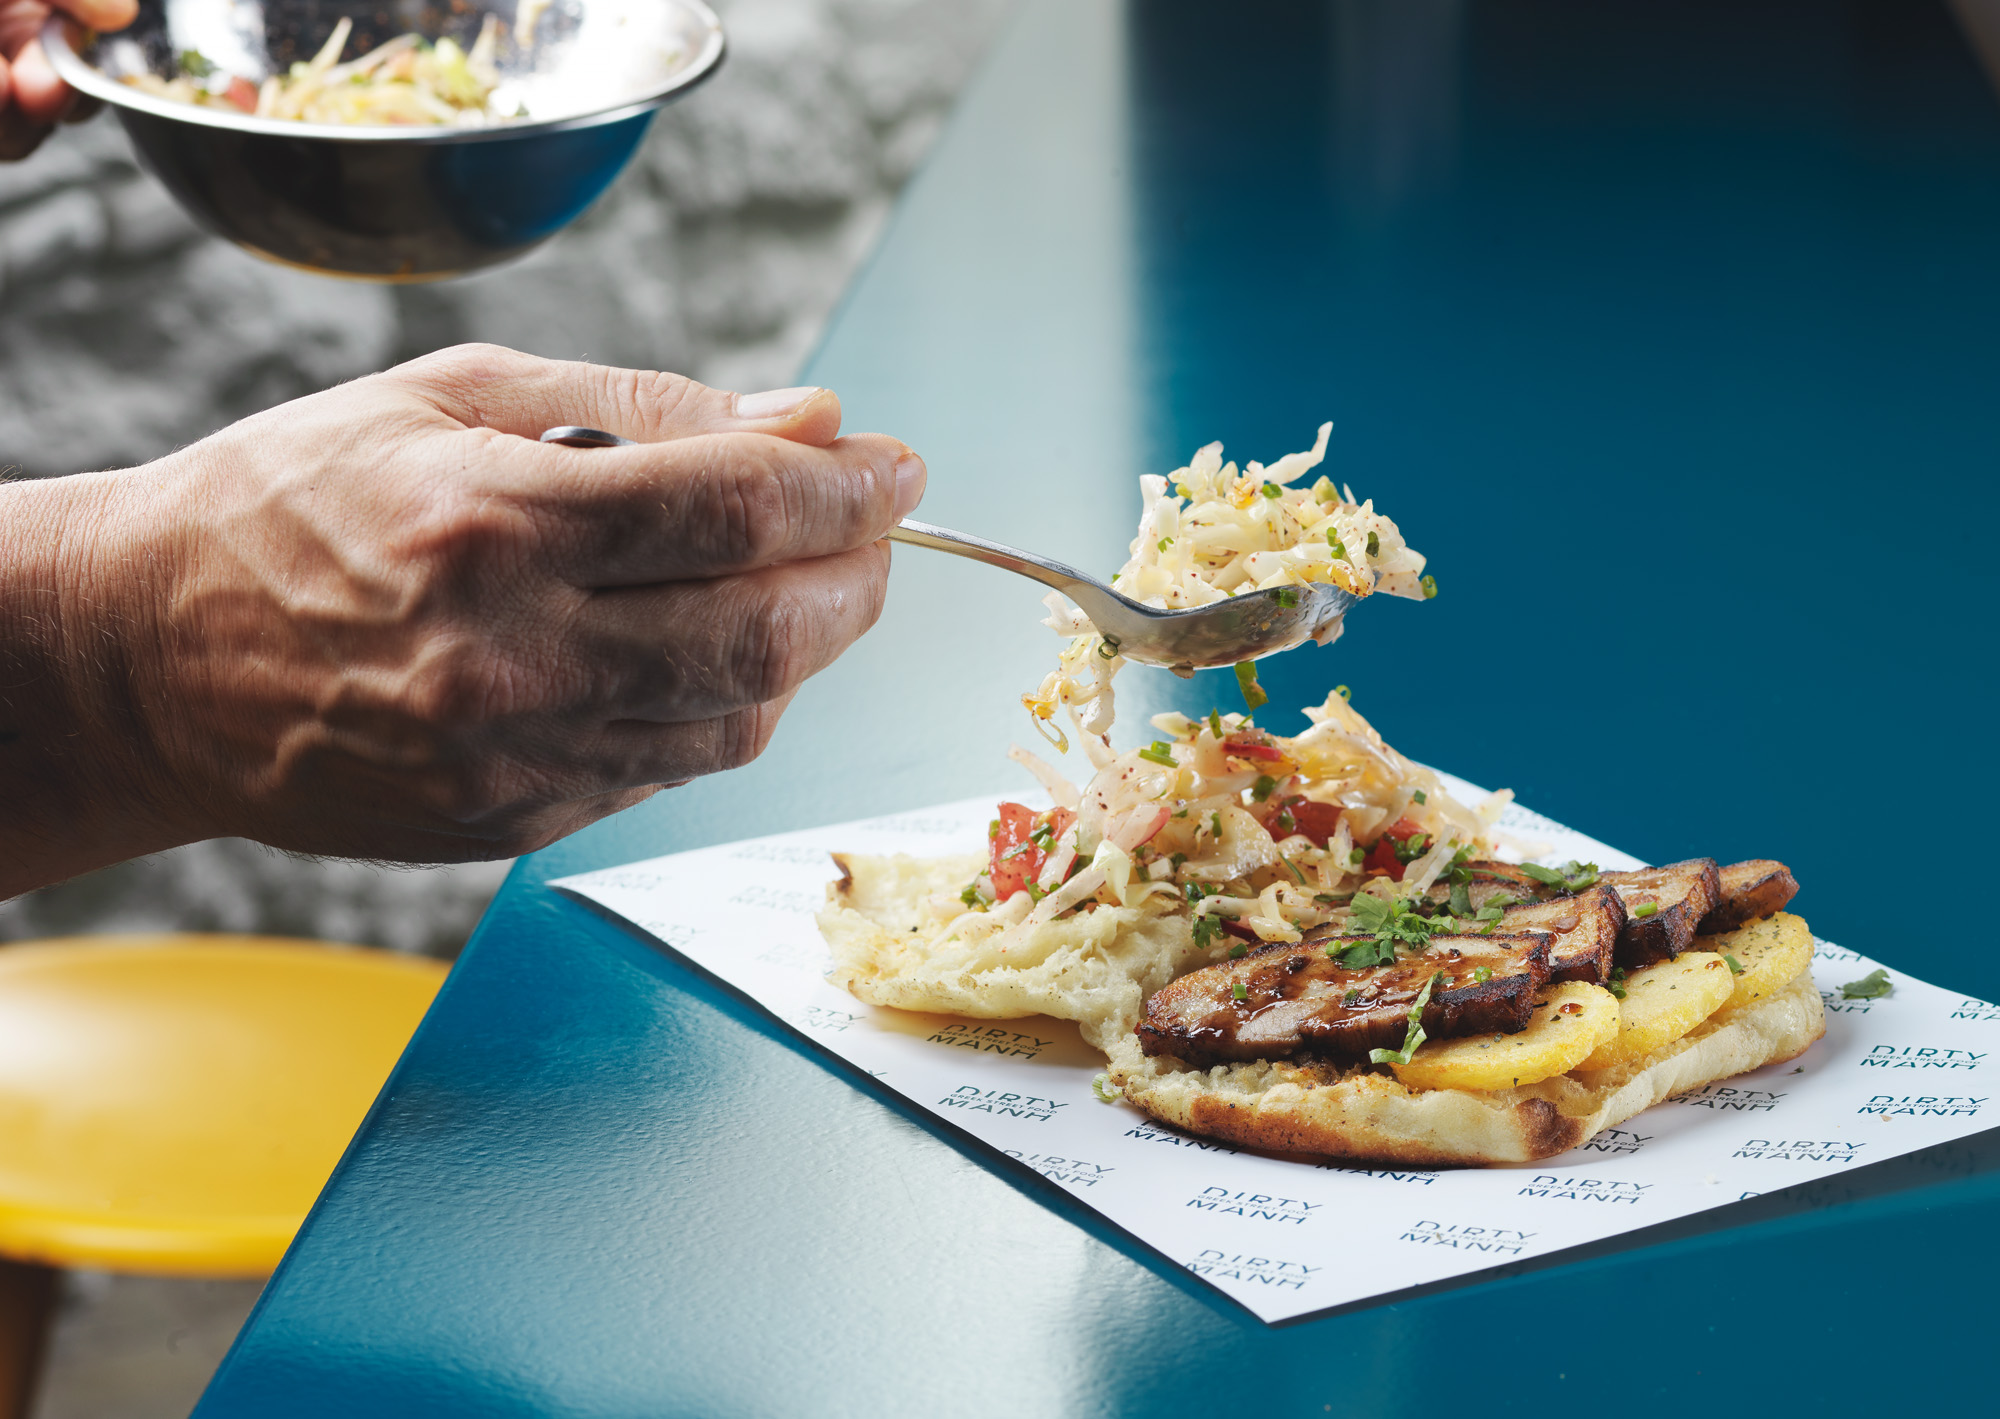 Πατάτες στο χέρι, γύρος-όνειρο: Το σουβλατζίδικο με τις αυθεντικές γεύσεις που θα λατρέψεις απ' την πρώτη μπουκιά (Pics)